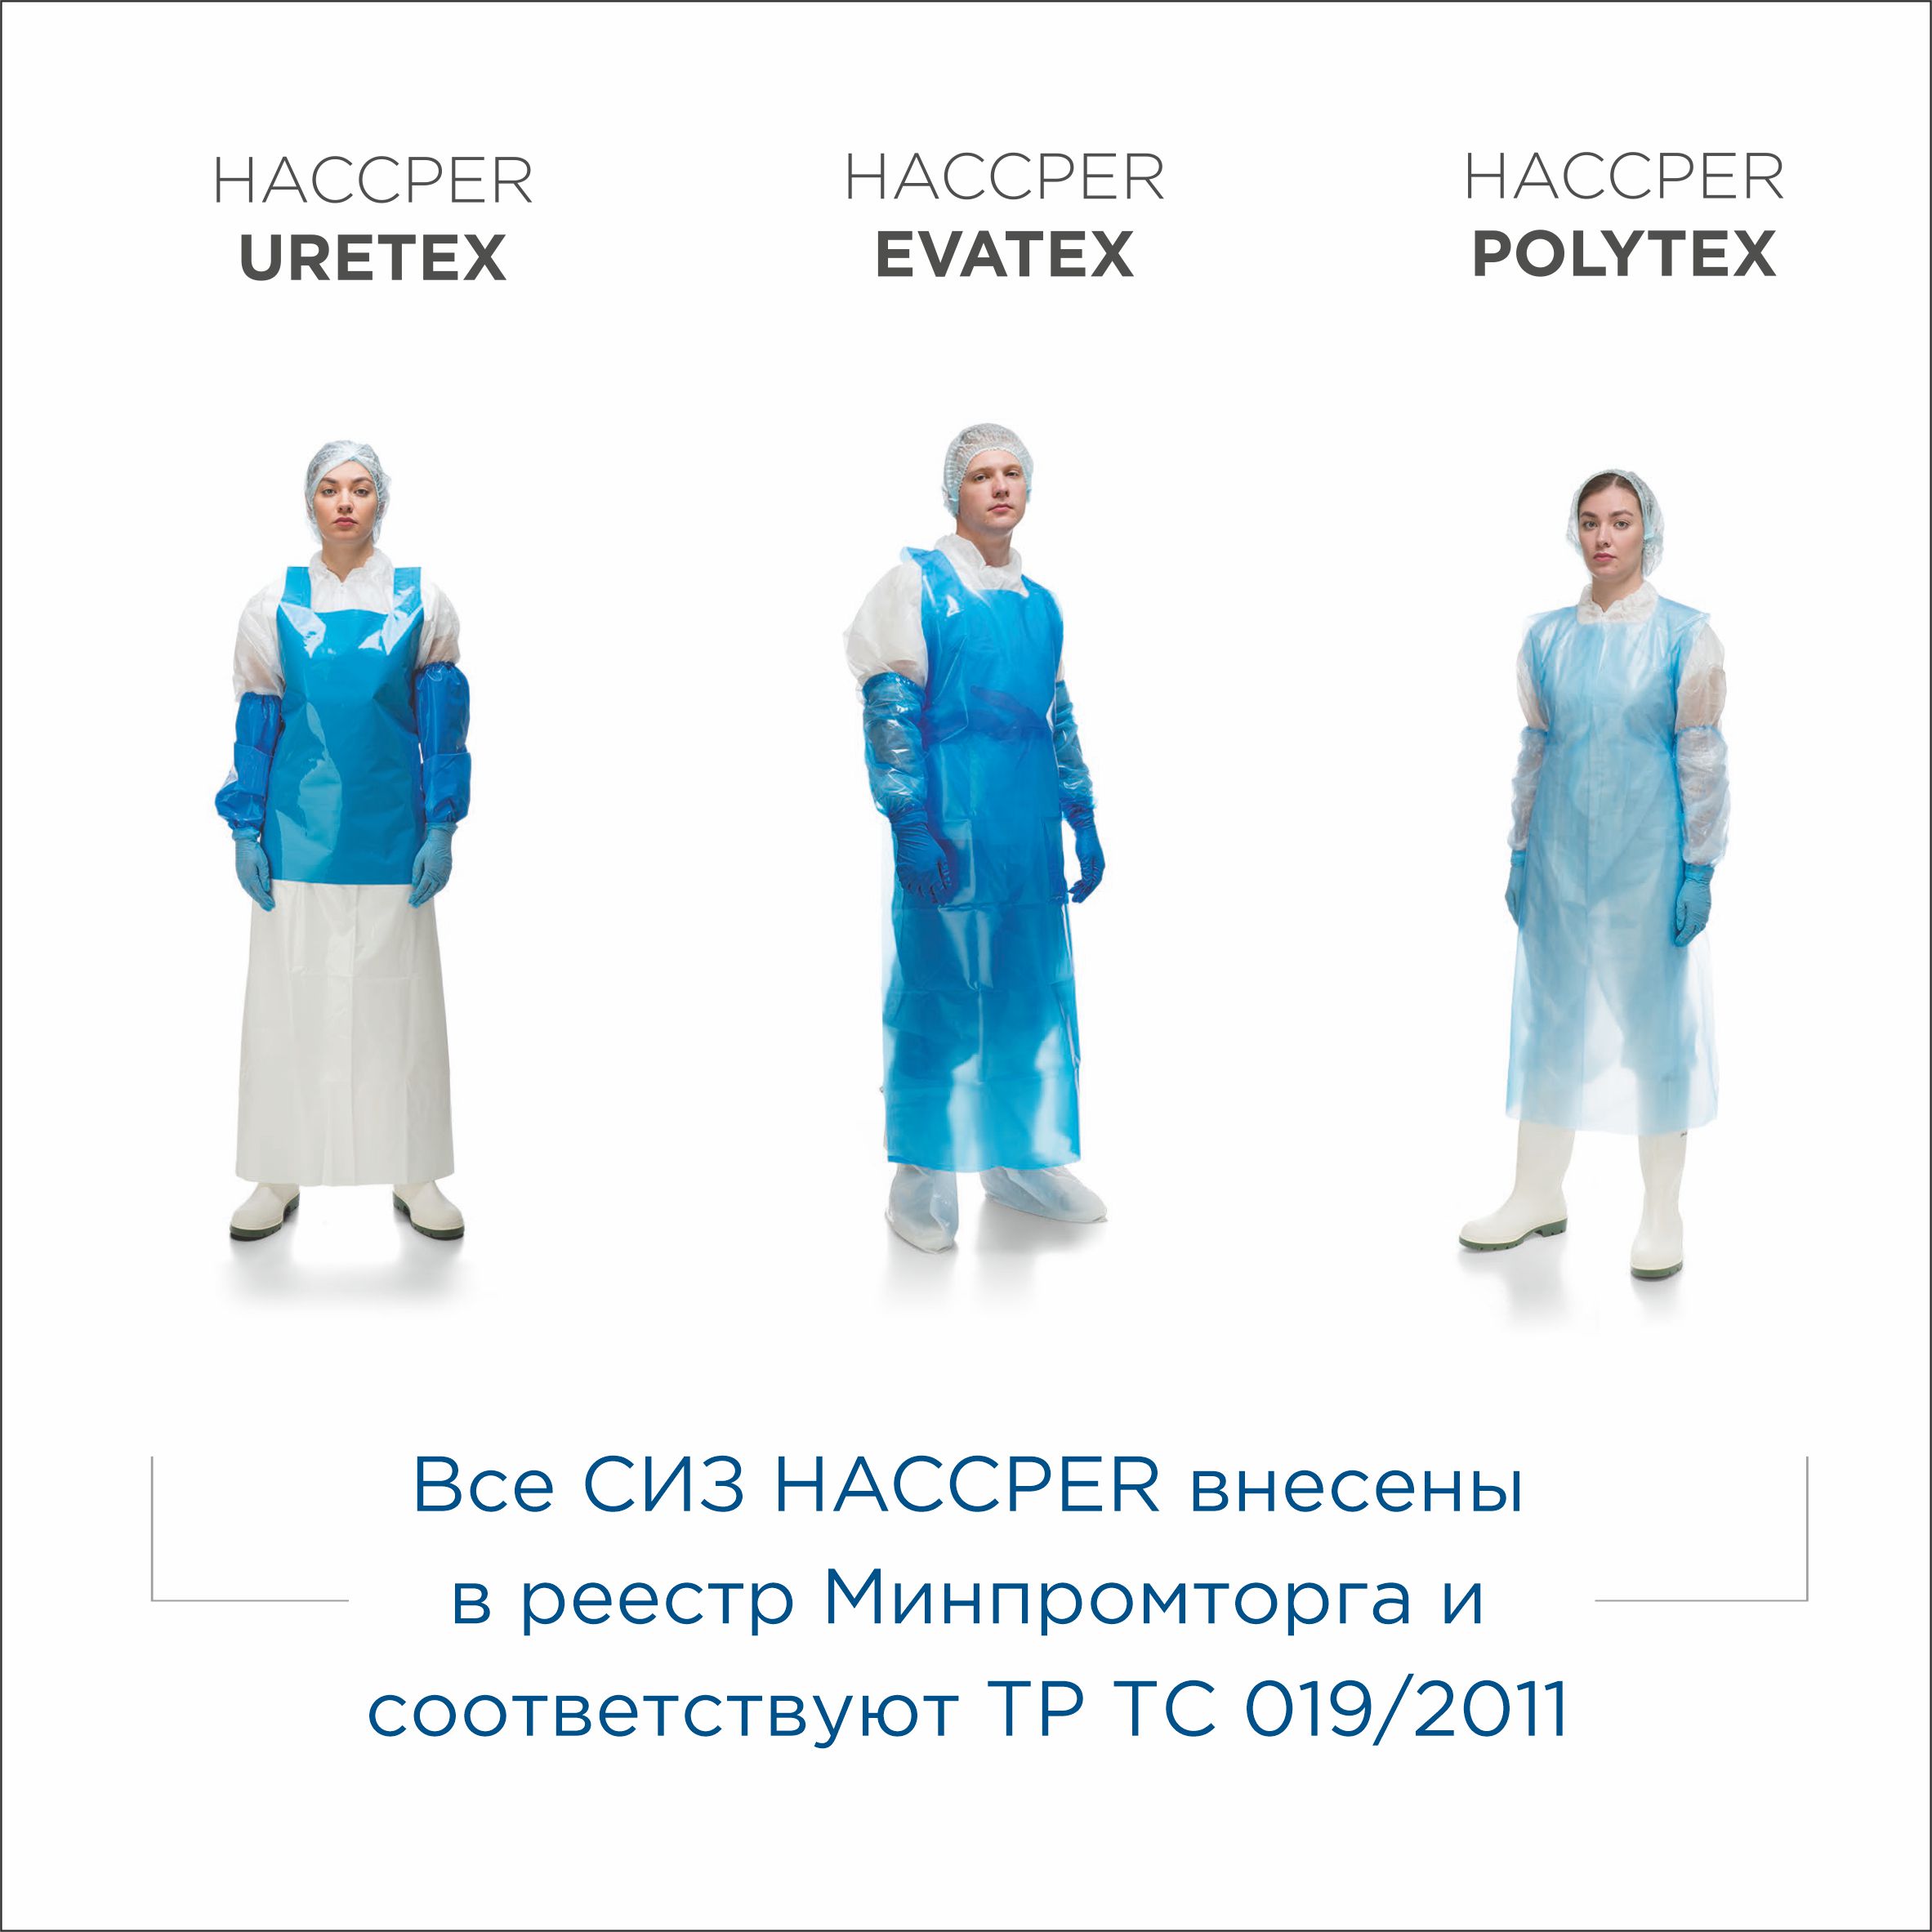 Нарукавник HACCPER Evatex 460х220 мм, 100 мкм, синий